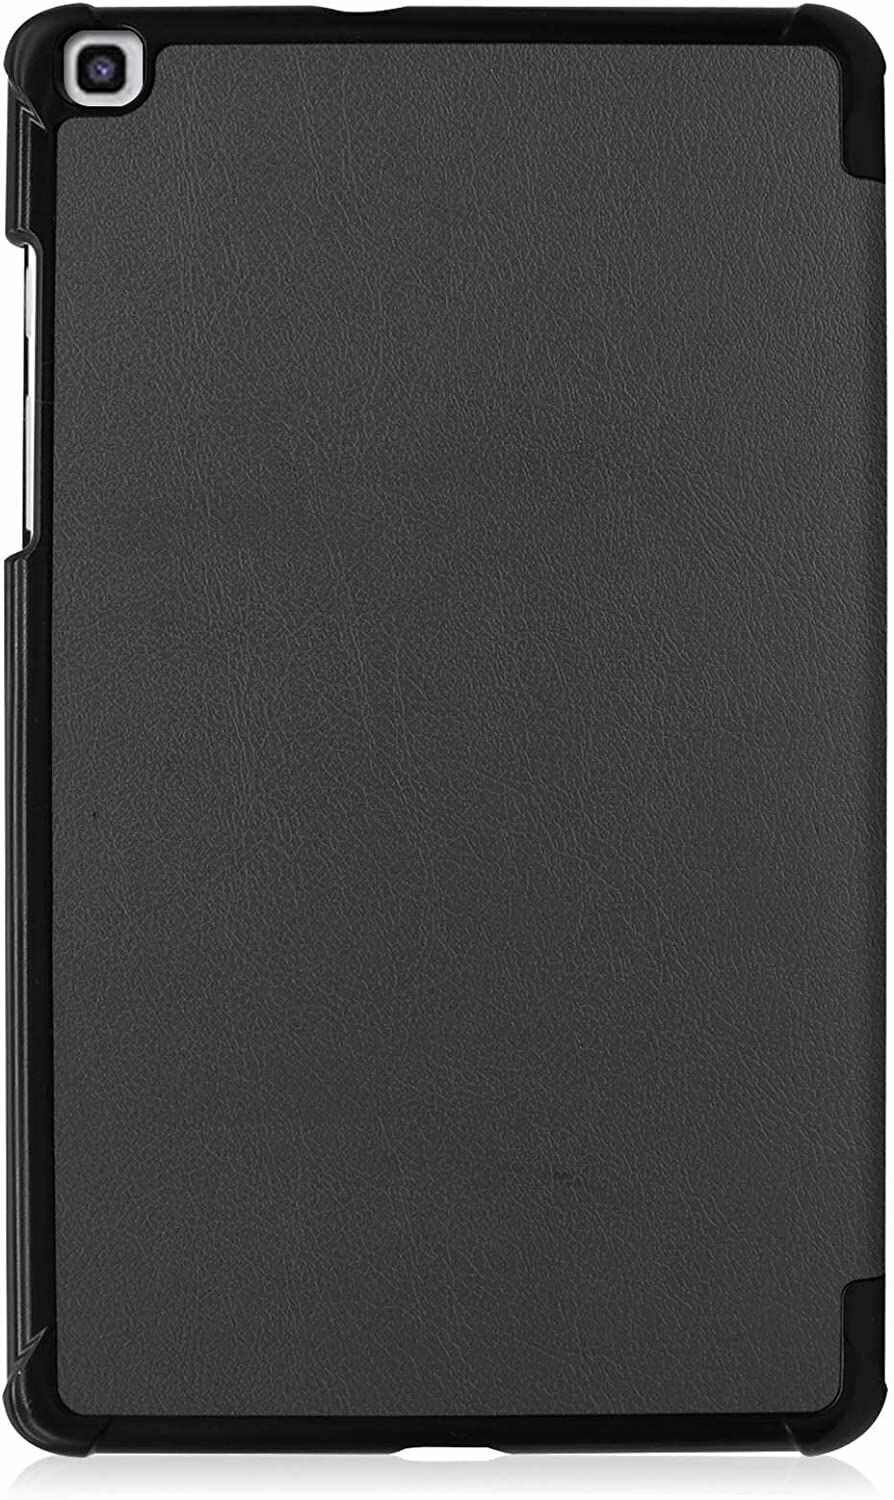 Умный чехол для Samsung Galaxy Tab A 8.0 SM-T290/T295, черный